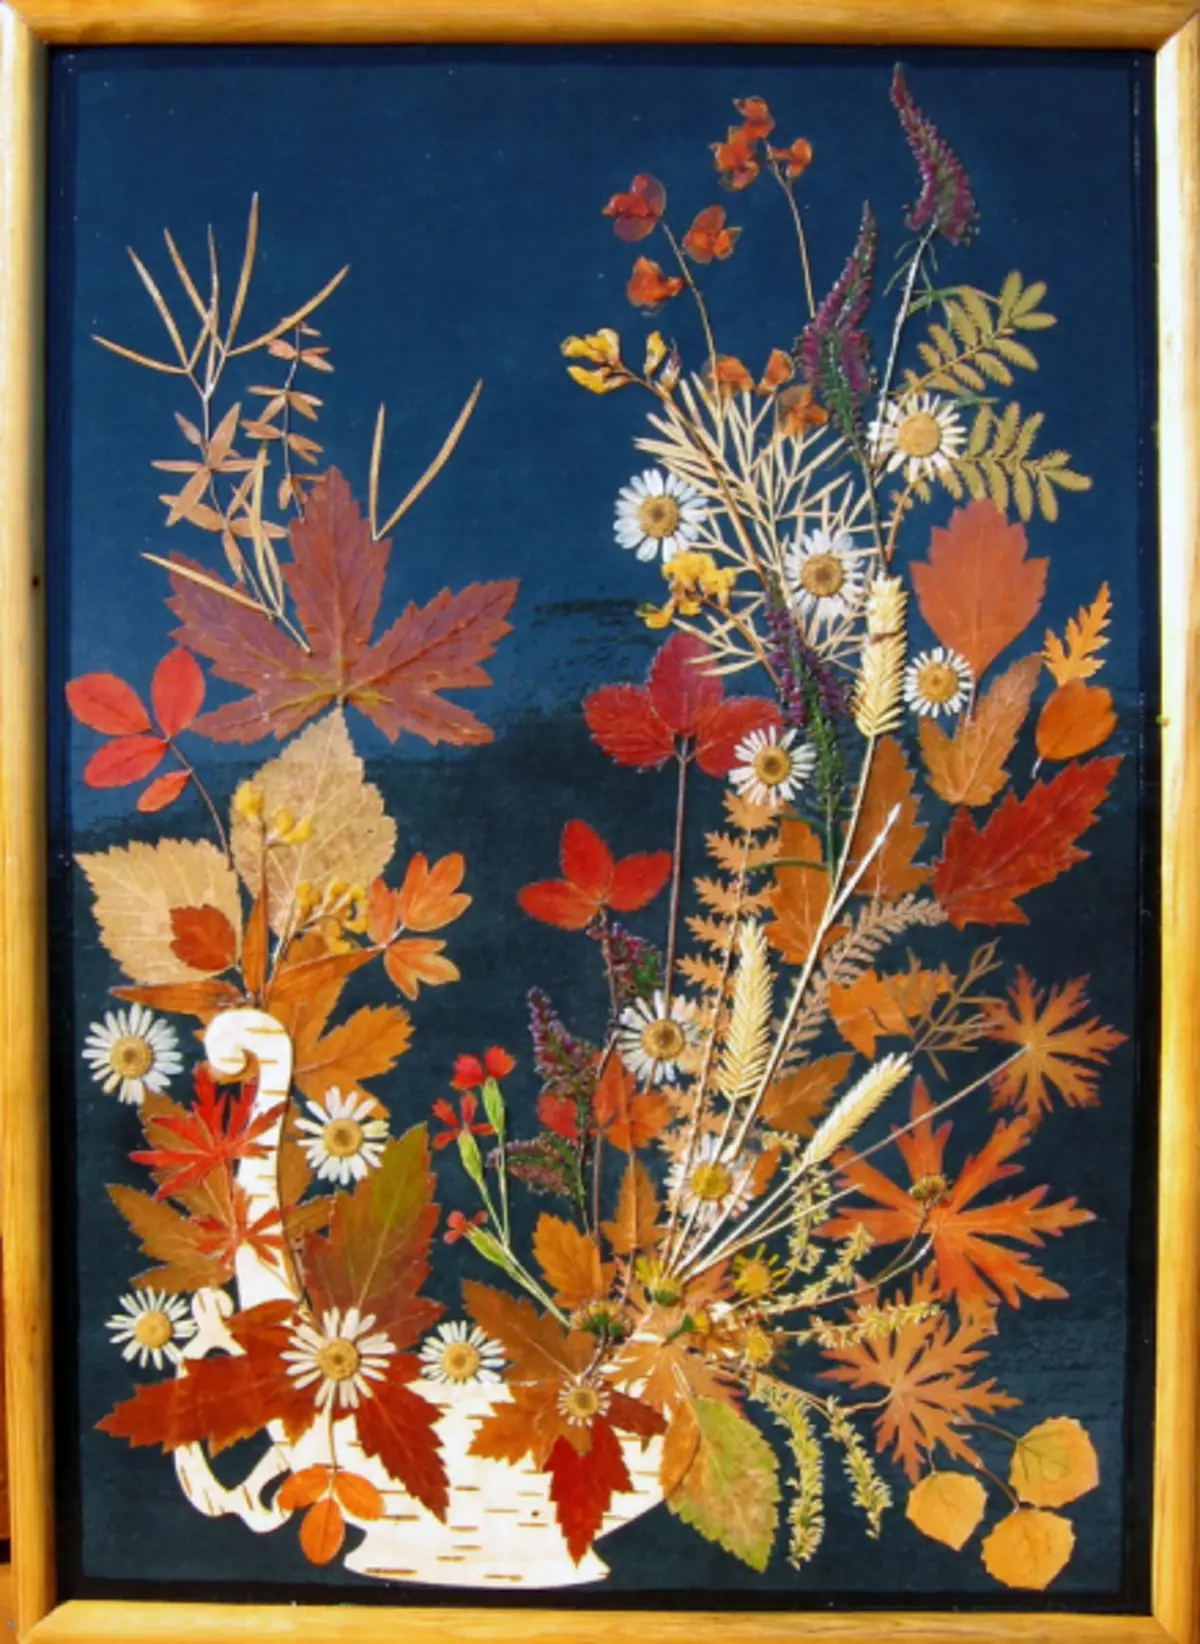 لوحة من المواد الطبيعية على موضوع الخريف مع الصورة